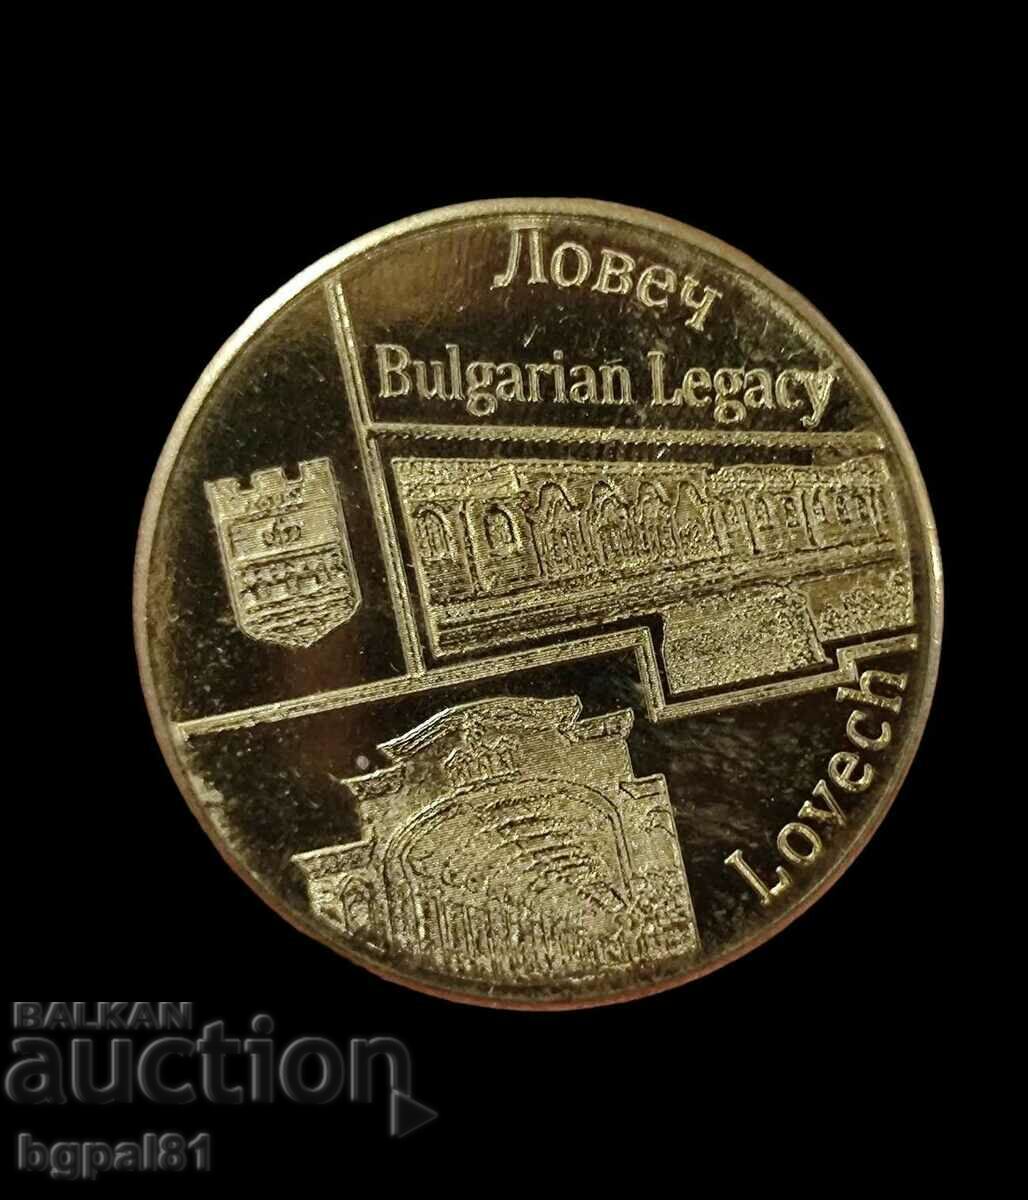 Lovech - Emisiune de medalii „Moștenire bulgară”.